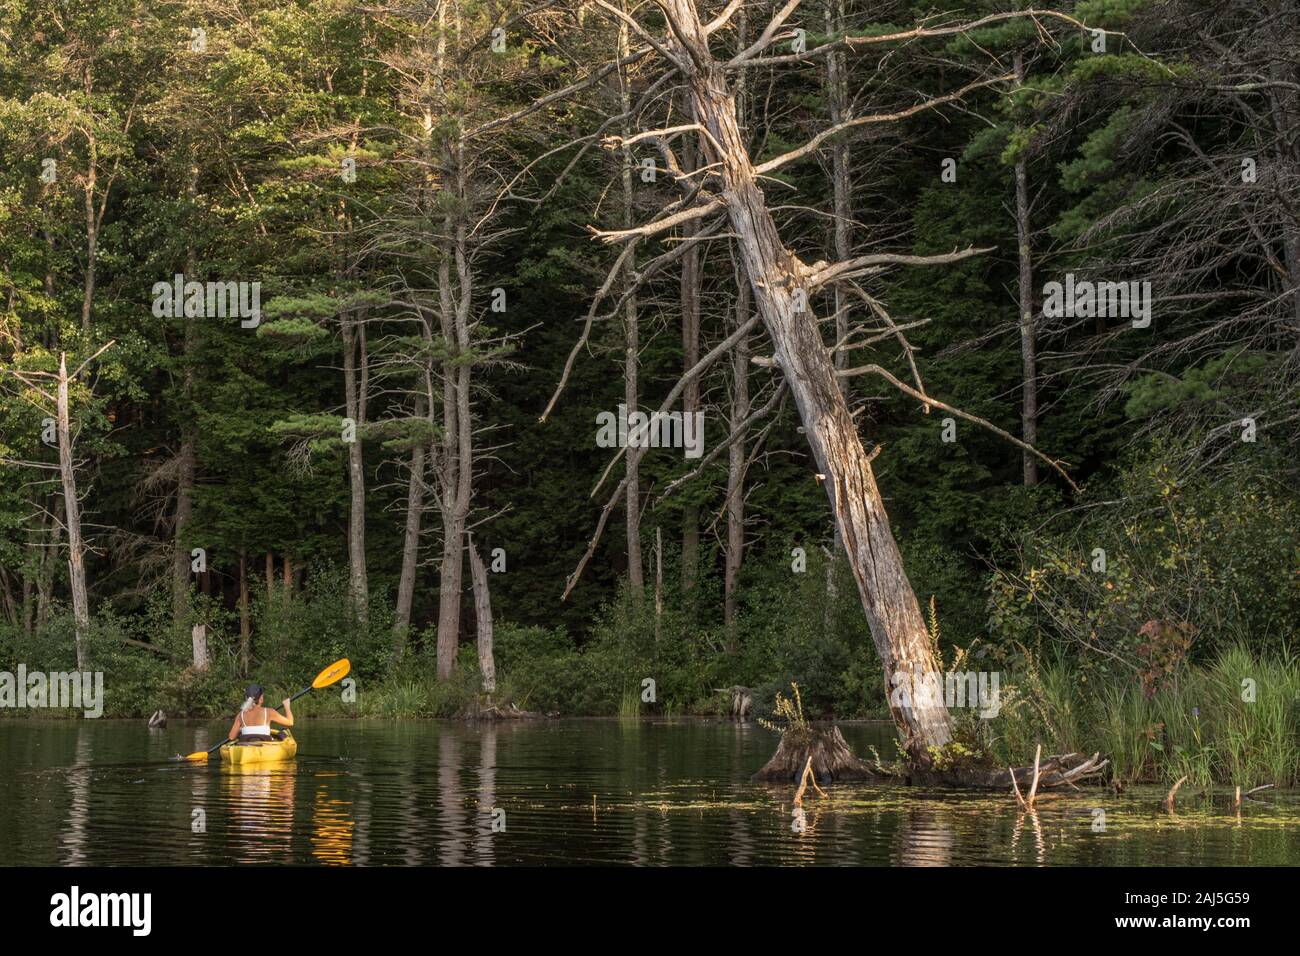 The Tully Lake, Royalston, Massachusetts Stock Photo